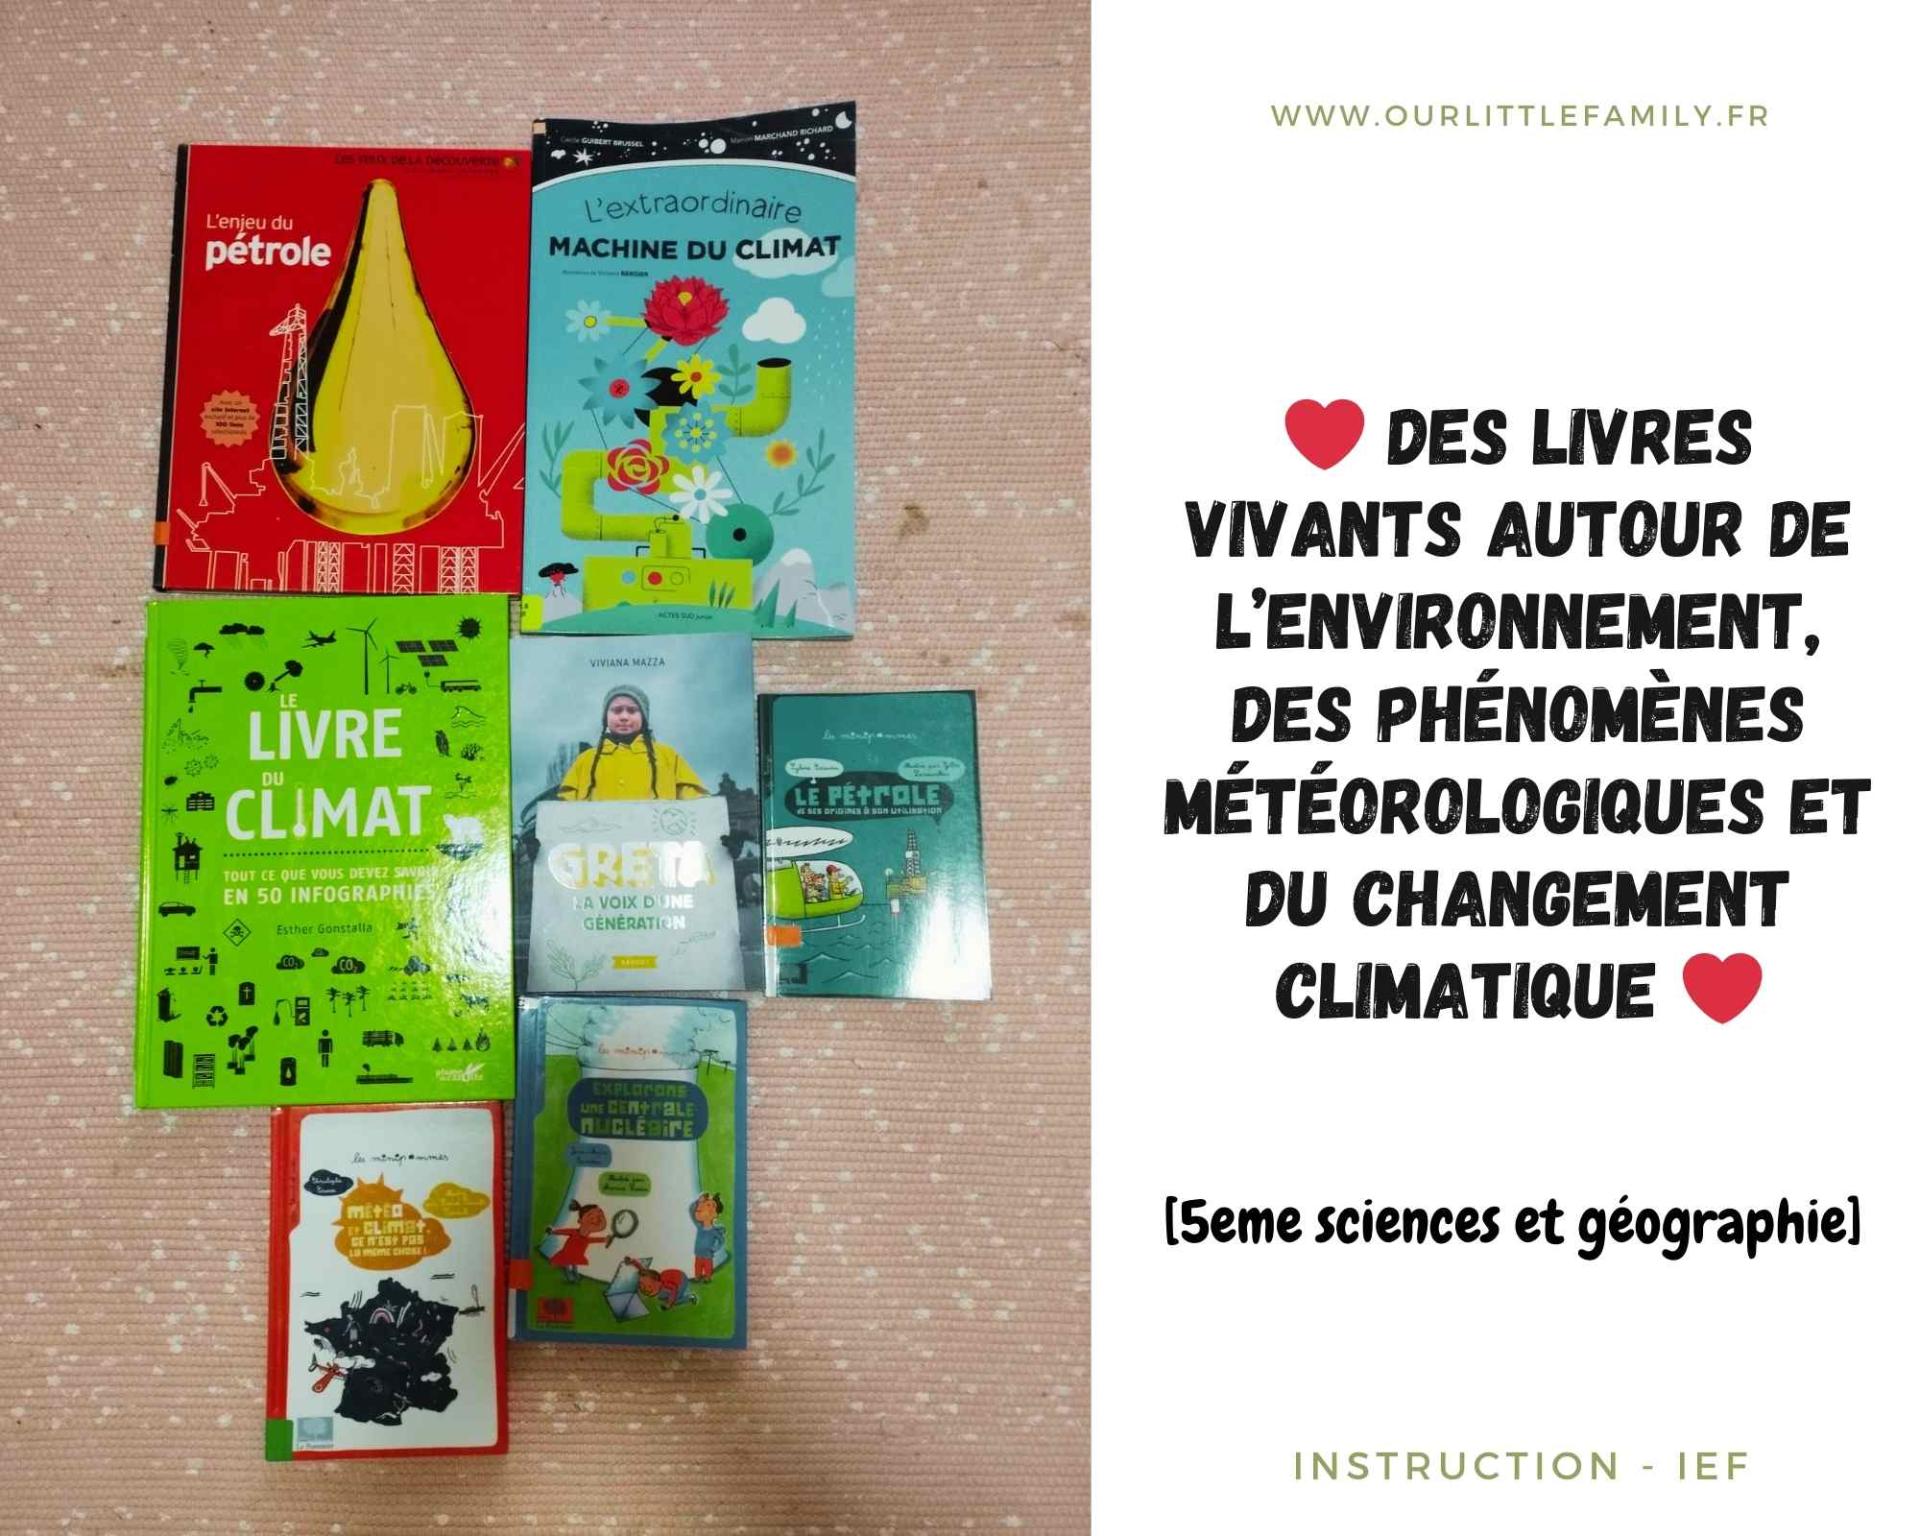 Des livres vivants autour de l environnement des phenomenes meteorologiques et du changement climatique